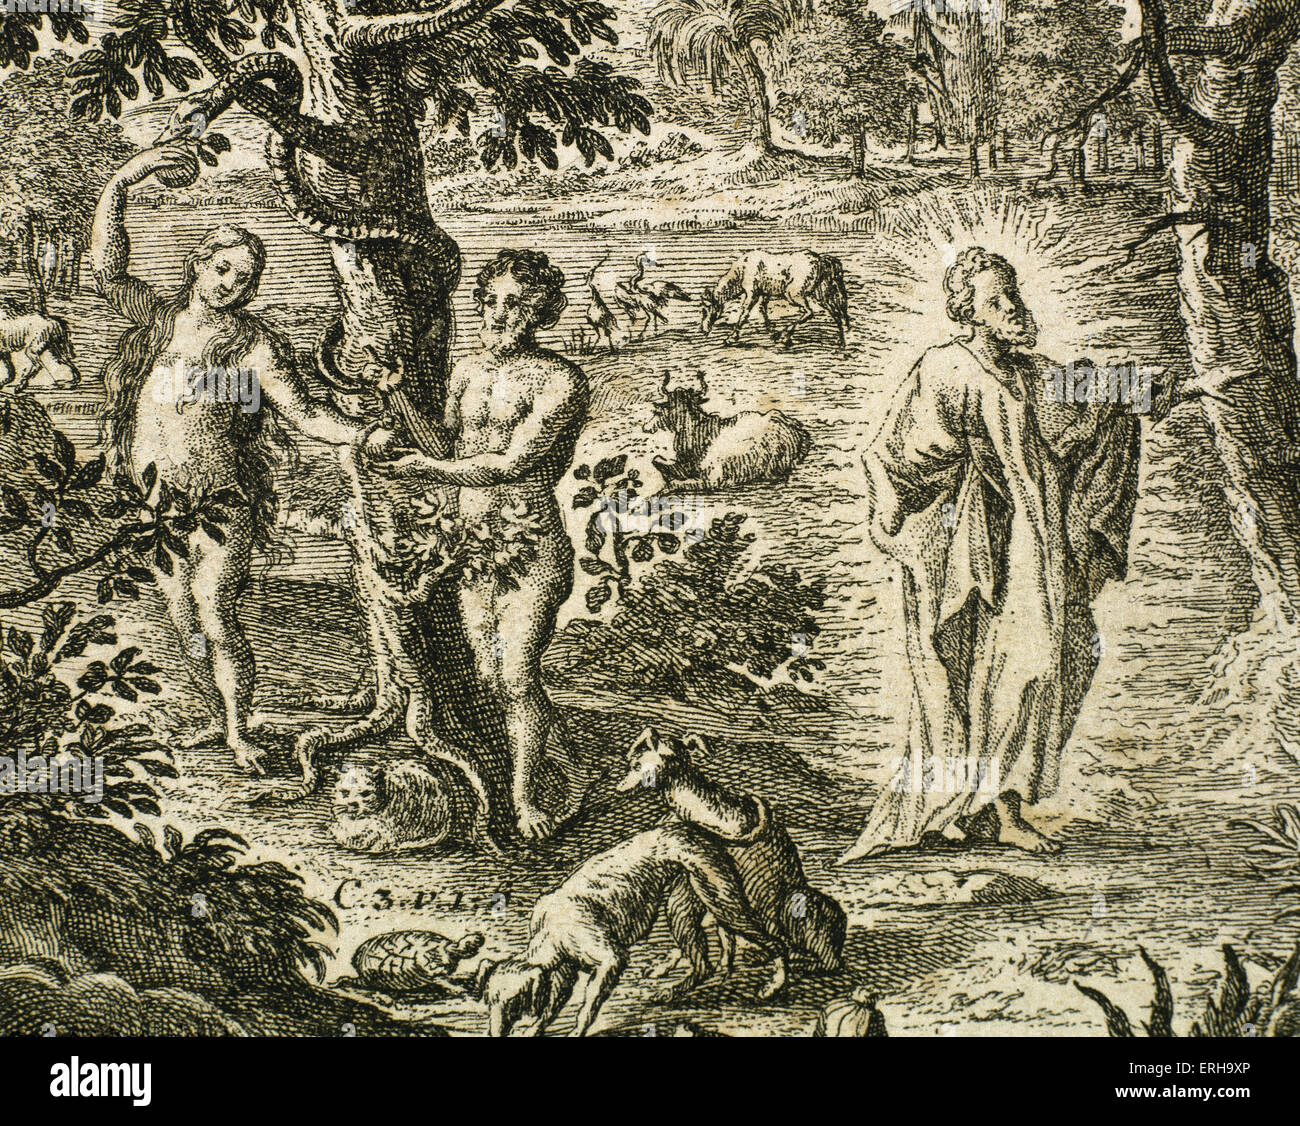 Alten Testament Erbsunde Adam Und Eva Gott Ungehorsam Aus Dem Garten Eden Verbannt Gravur Buch Der Genesis Stockfotografie Alamy